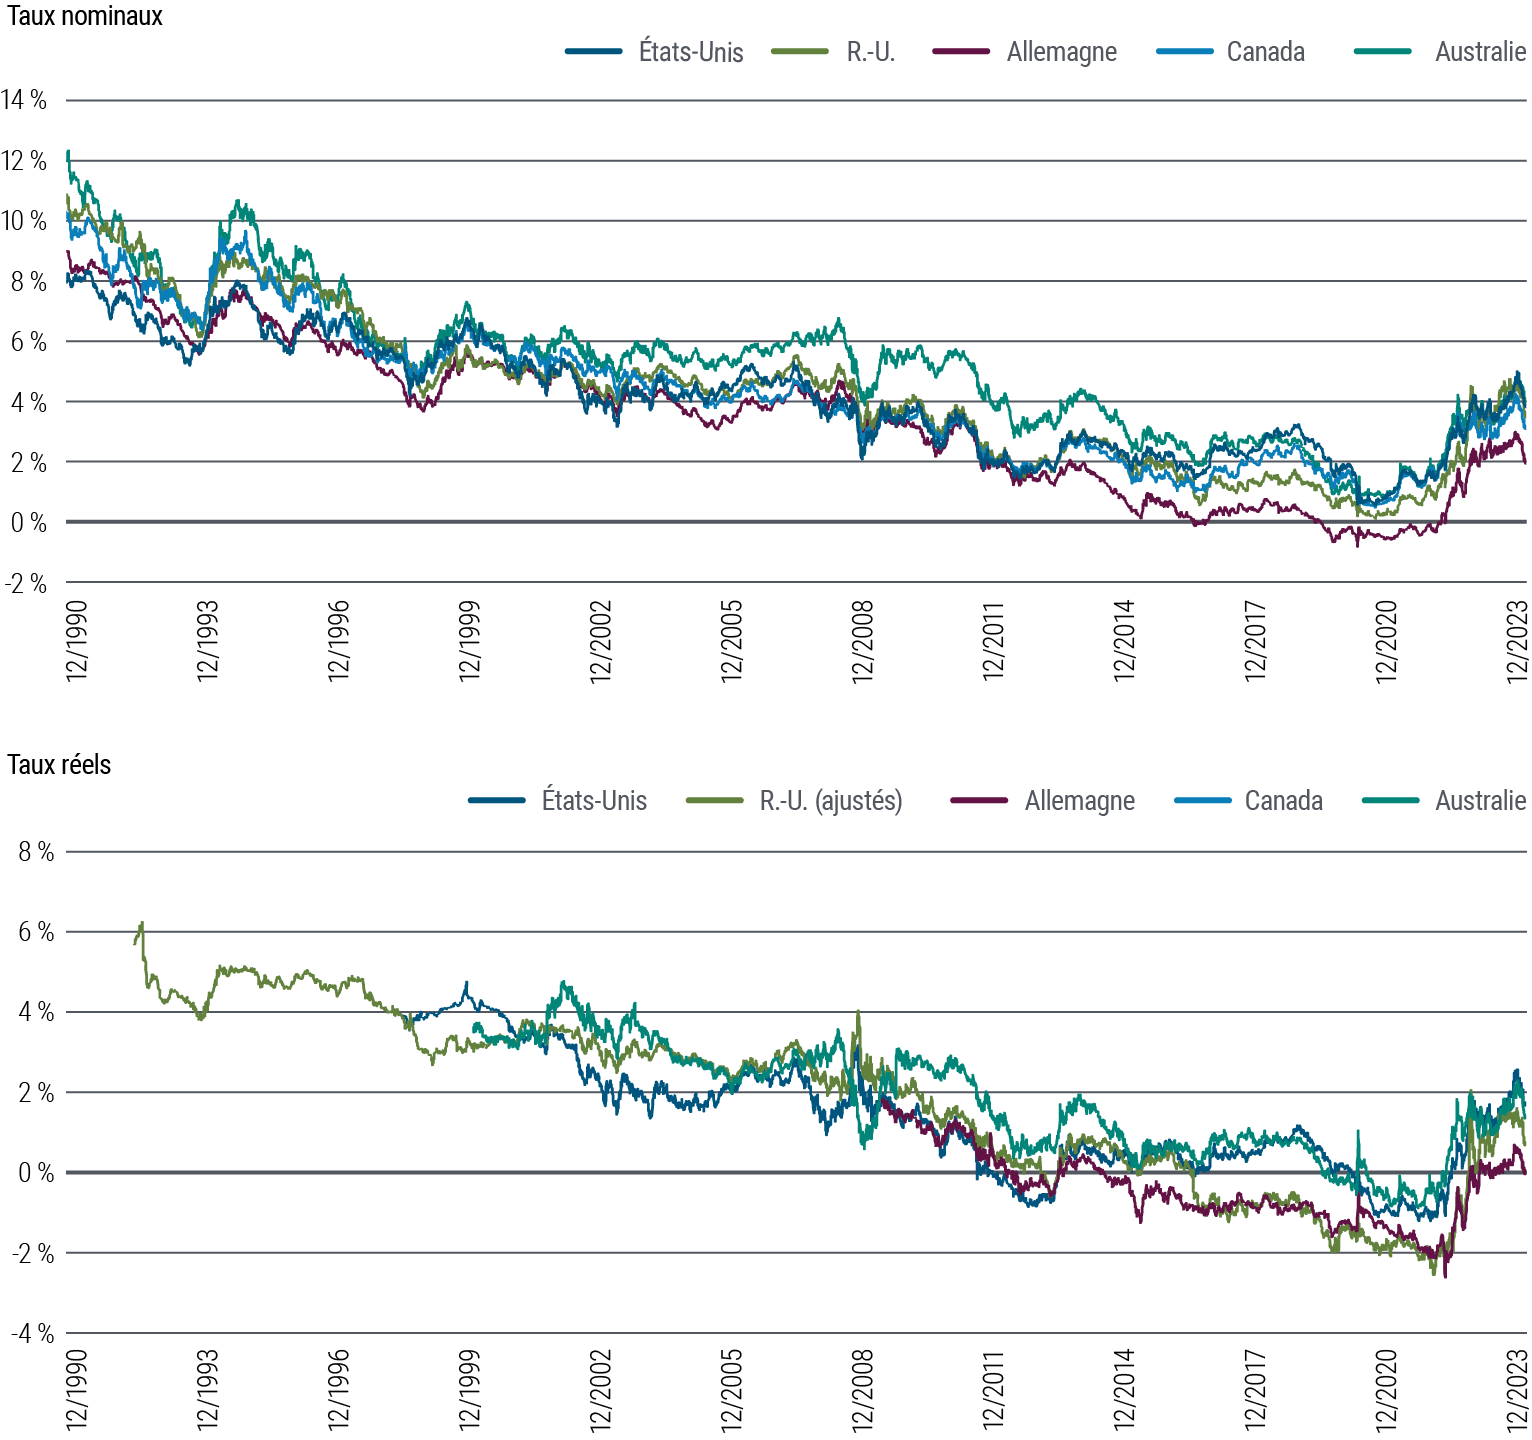 La Figure 3 présente deux graphiques linéaires. Le premier indique les taux d’intérêt nominaux à 10 ans dans cinq pays développés (États-Unis, Royaume-Uni, Allemagne, Canada et Australie) de 1990 à décembre 2023. Au cours de cette période, les taux nominaux ont varié entre 9 % et 14 % en 1990 pour atteindre dans une tendance générale à la baisse quasiment zéro en 2020, lors de la pandémie. Ils se sont depuis redressés pour osciller entre 2 % et presque 4 %. Le deuxième graphique représente les taux d’intérêt réels à 10 ans dans ces pays pour la même période. Ceux-ci ont généralement diminué progressivement pendant l’essentiel de la période, puis se sont rapidement redressés à l’issue de la pandémie, moyennant un certain ralentissement plus récemment, pour fluctuer entre 0,1 % et 1,7 %. Les données proviennent de PIMCO et Bloomberg, au 29 décembre 2023.